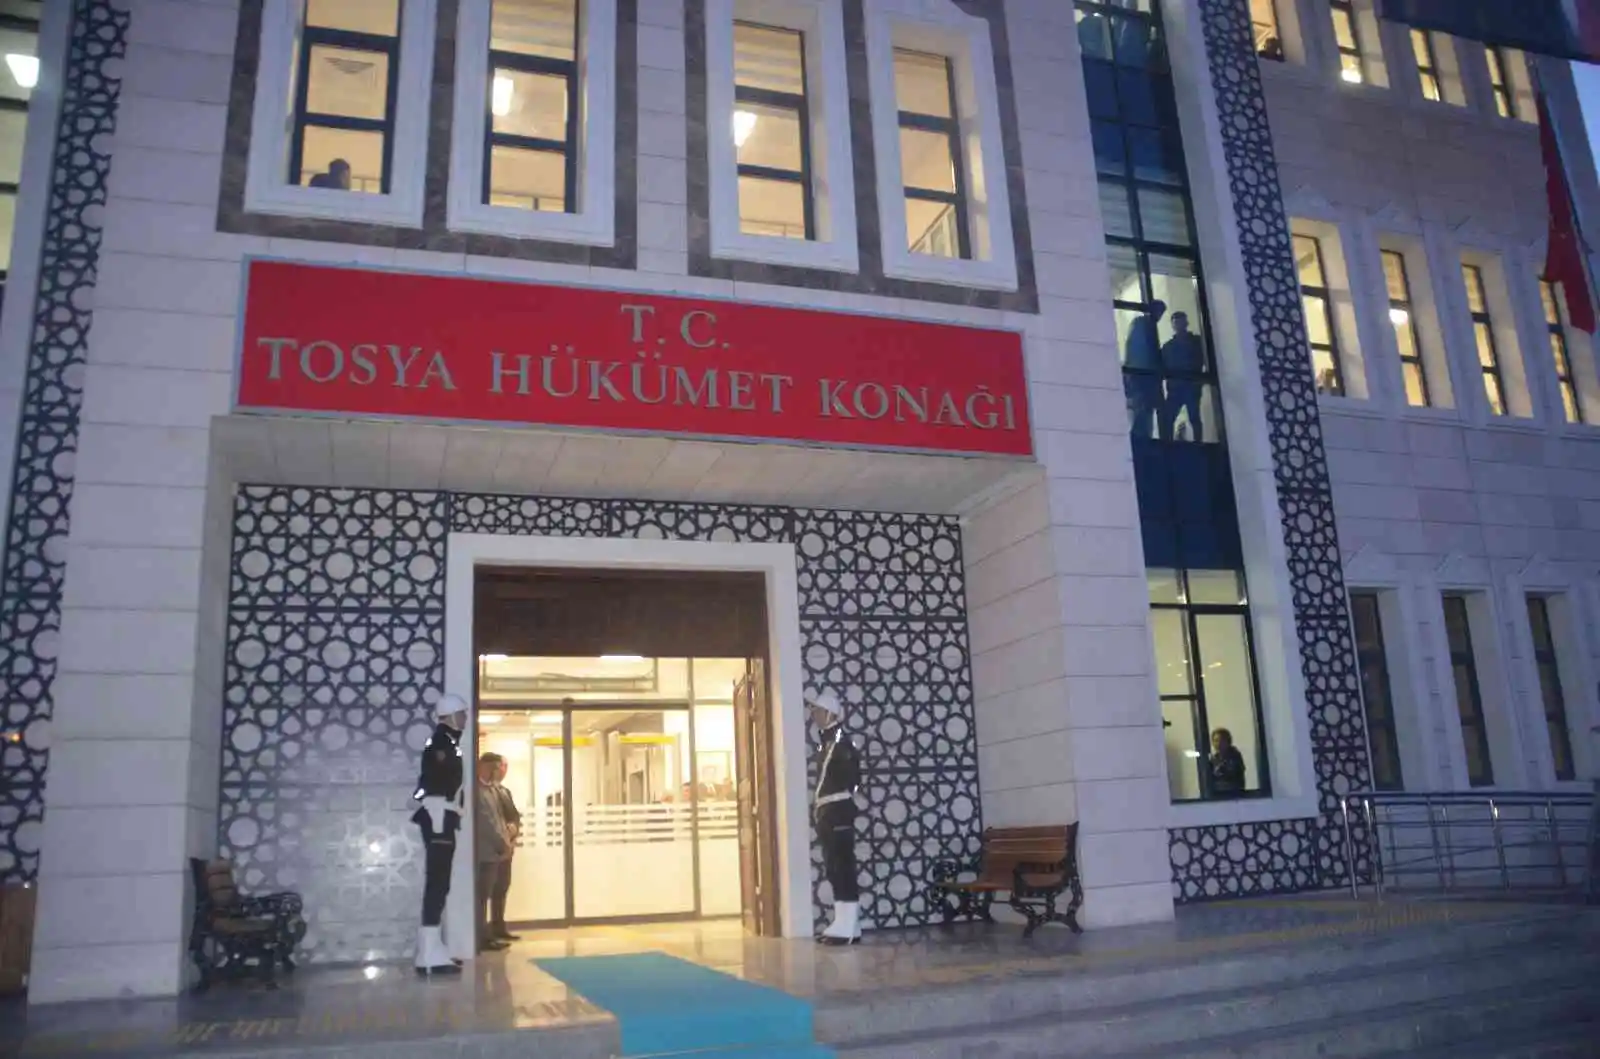 Tosya Hükümet Konağı, İçişleri Bakanı Süleyman Soylu'nun katılımıyla açıldı
